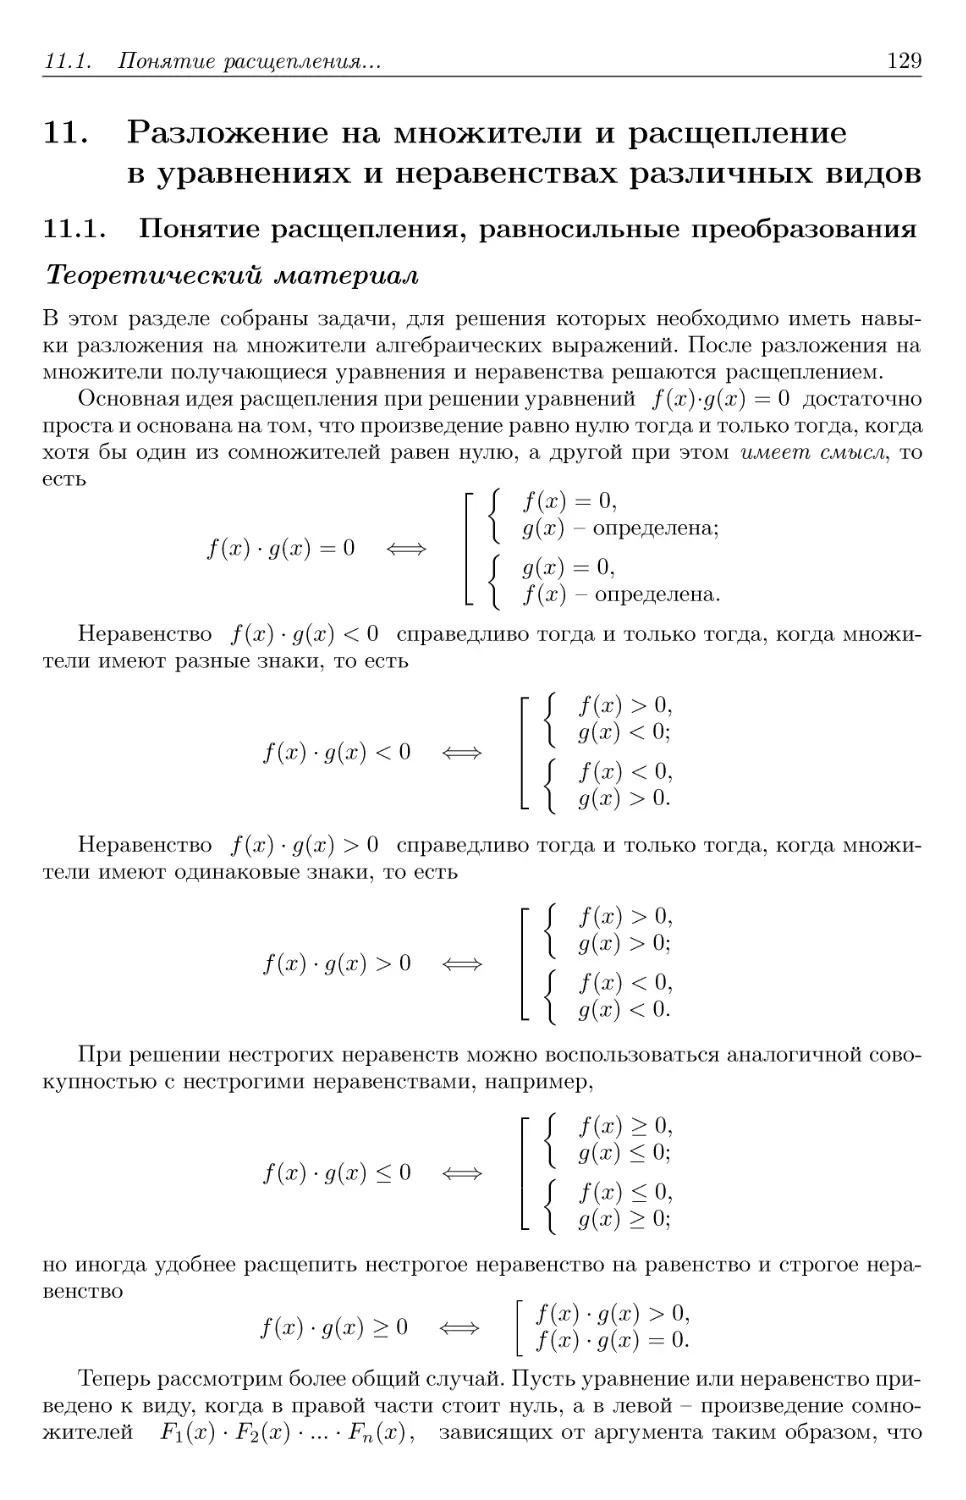 11. Разложение на множители и расщепление в уравнениях и неравенствах различных видов